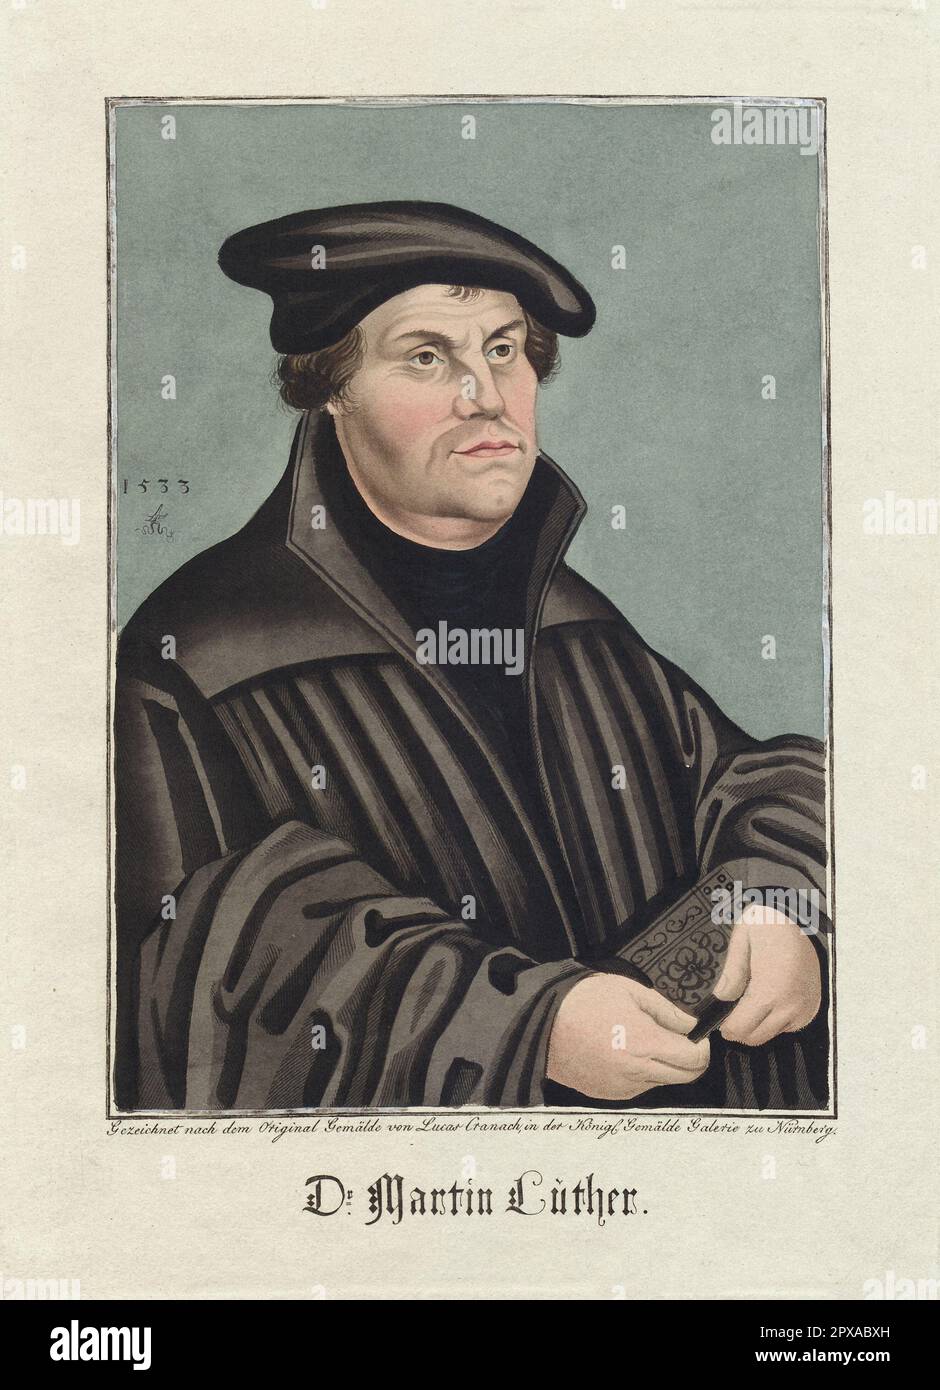 Martin Luther, 1820 Martin Luther (1483 – 1546) è stato un professore tedesco di teologia, sacerdote, autore, compositore, ex monaco agostiniano ed è meglio conosciuto come una figura seminale nella riforma protestante e come l'omonimo luteranesimo. Foto Stock